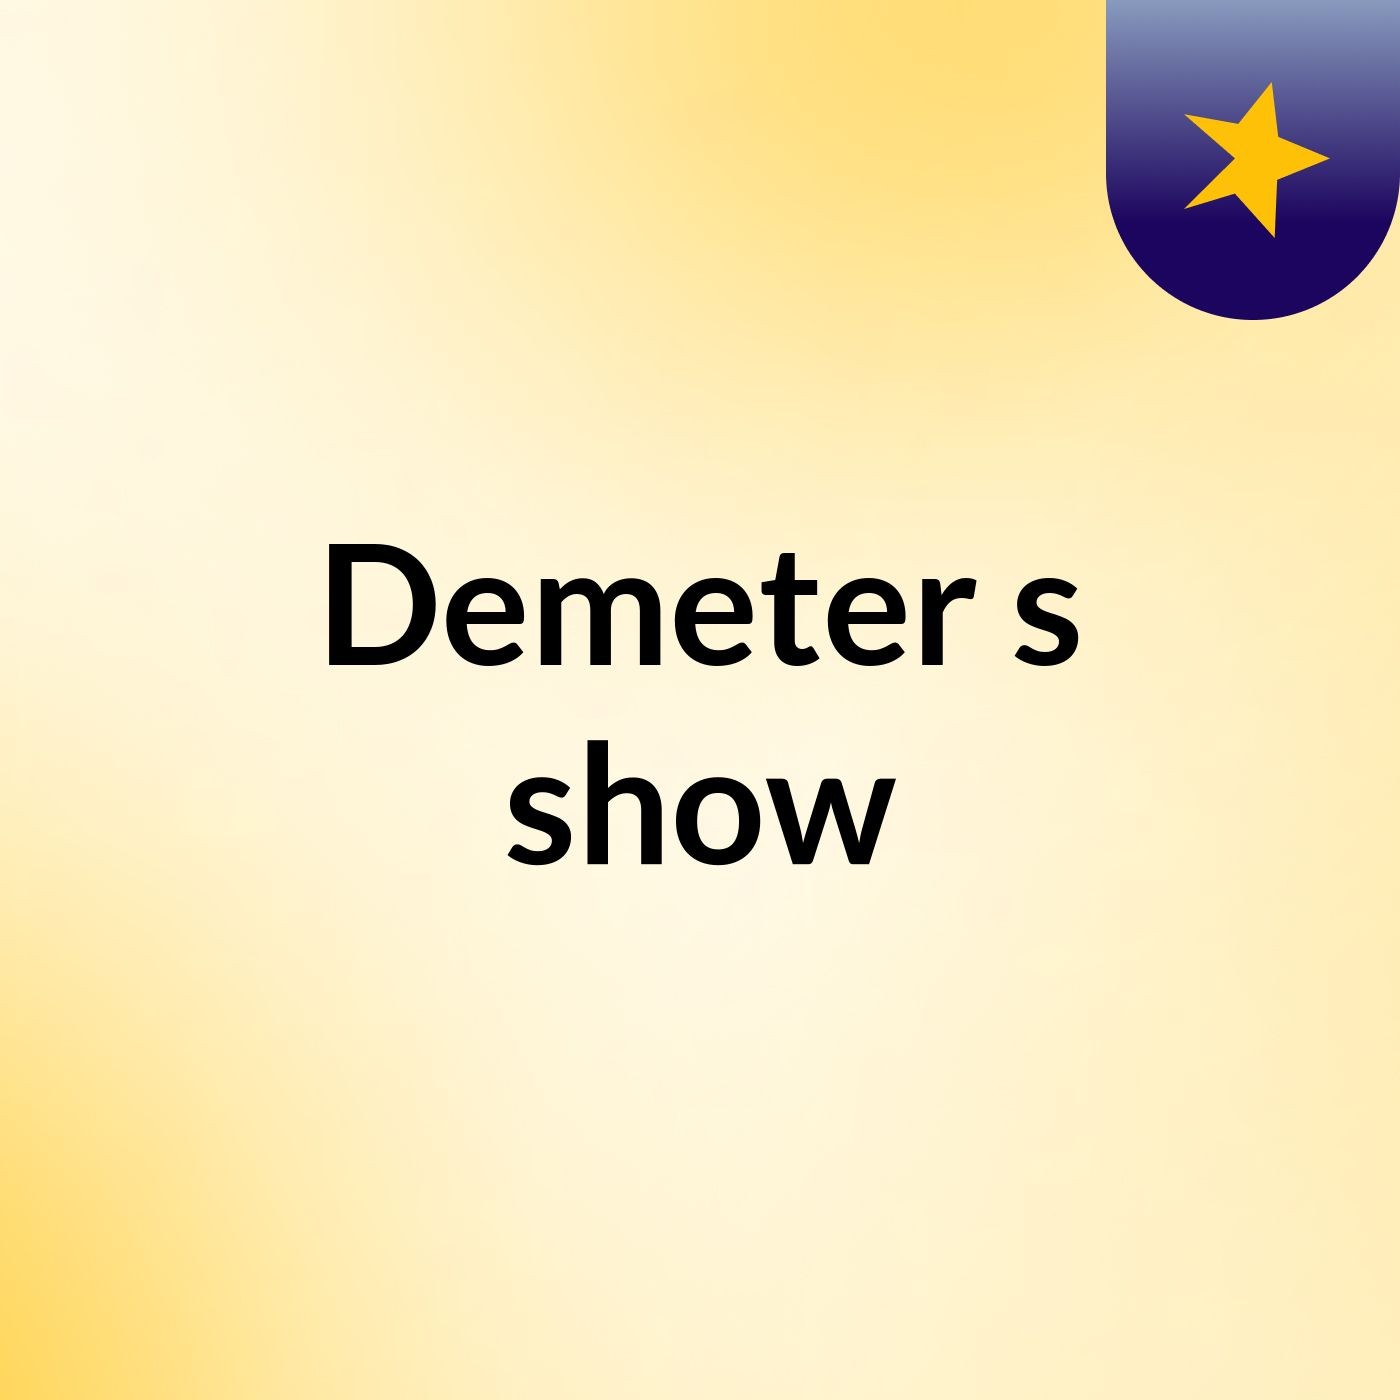 Demeter's show